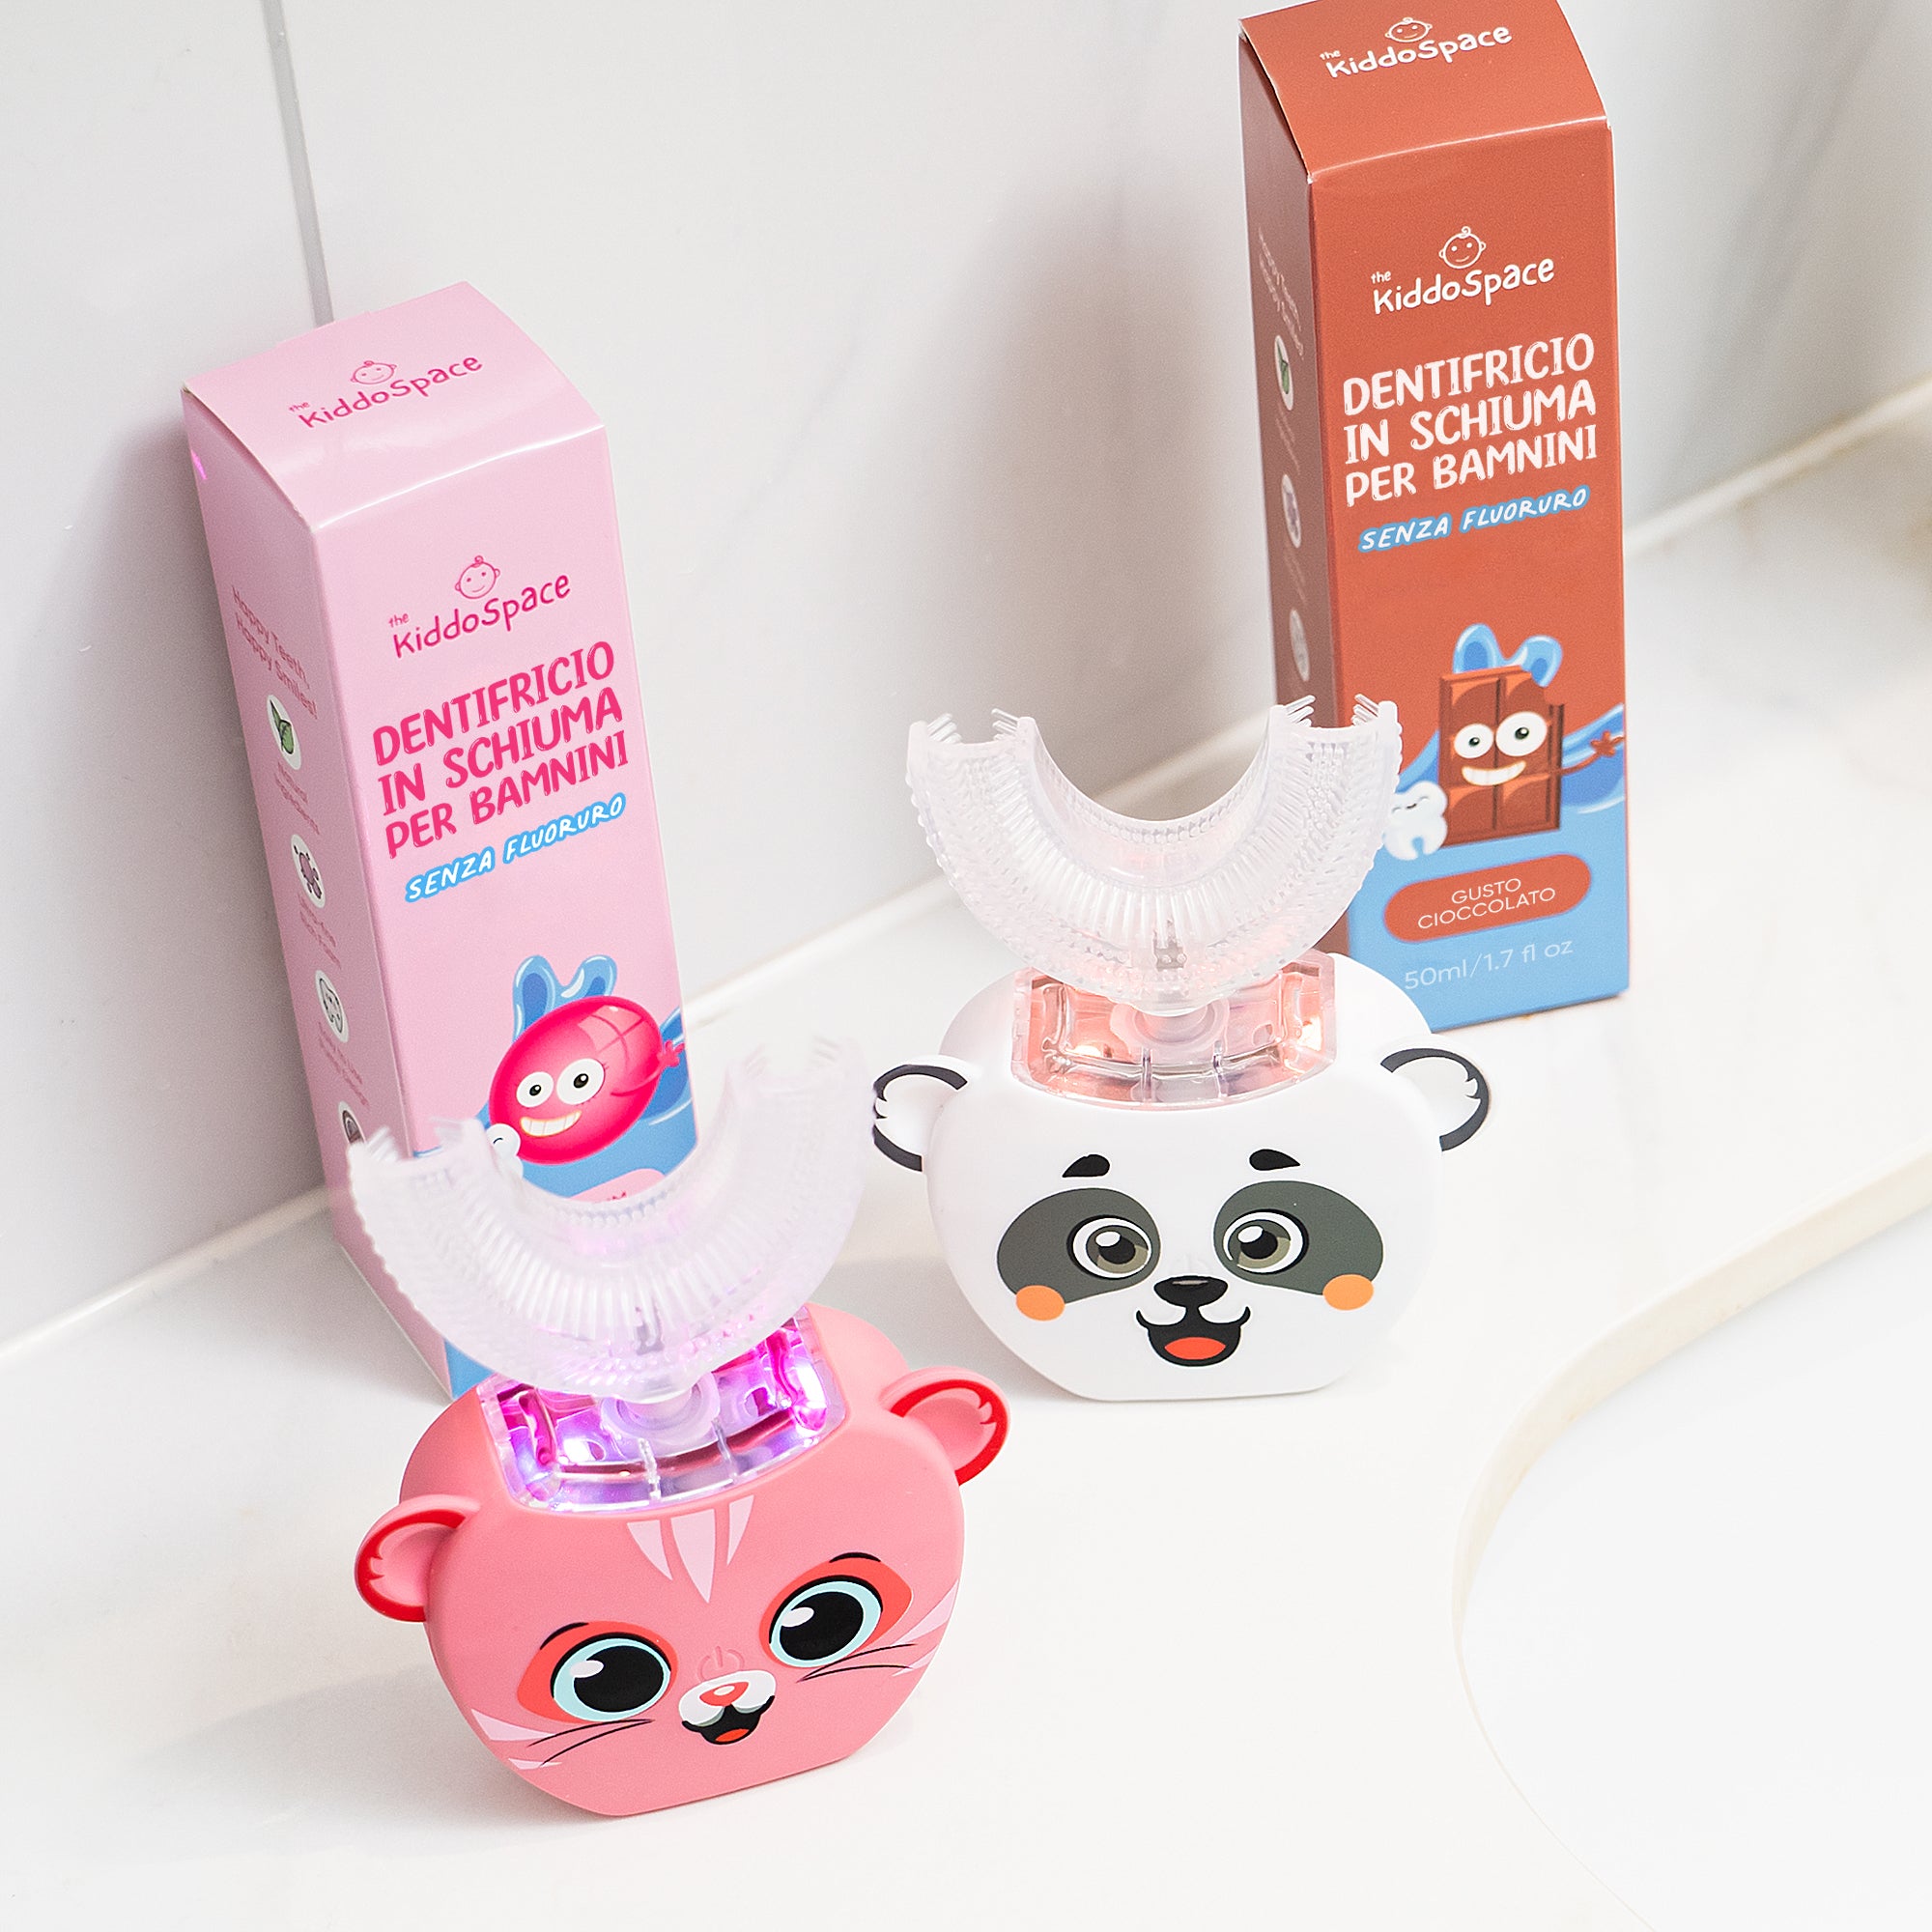 KiddoSpazzolino - Un nuovo ed efficace modo di lavare i denti